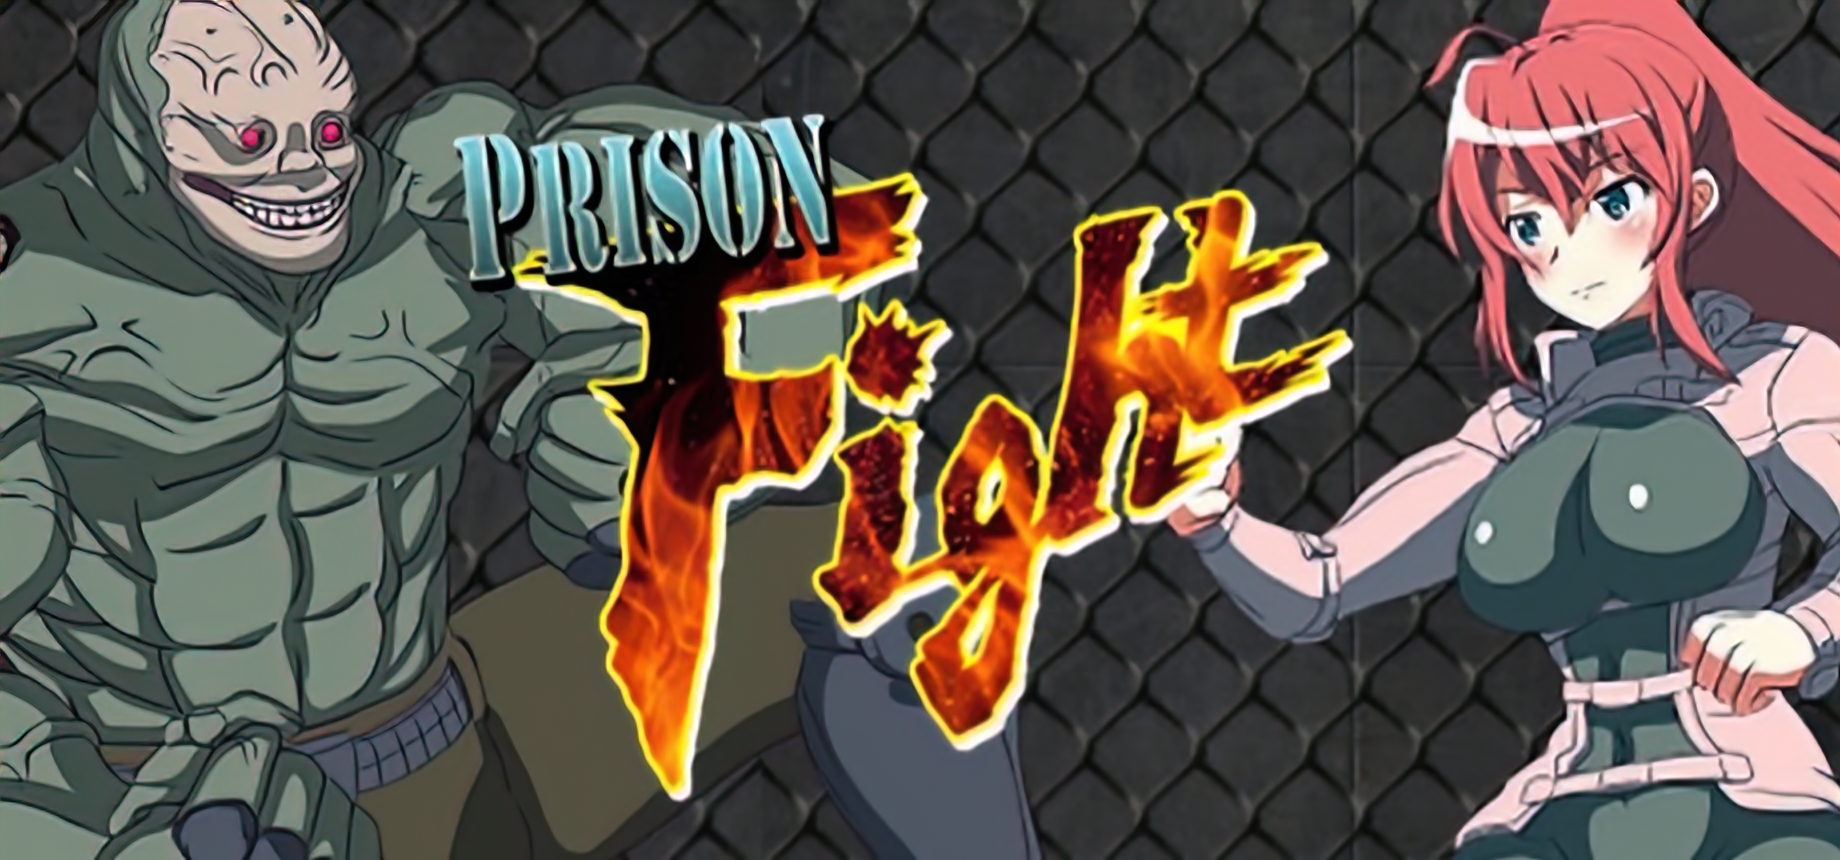 Prison Fight main image